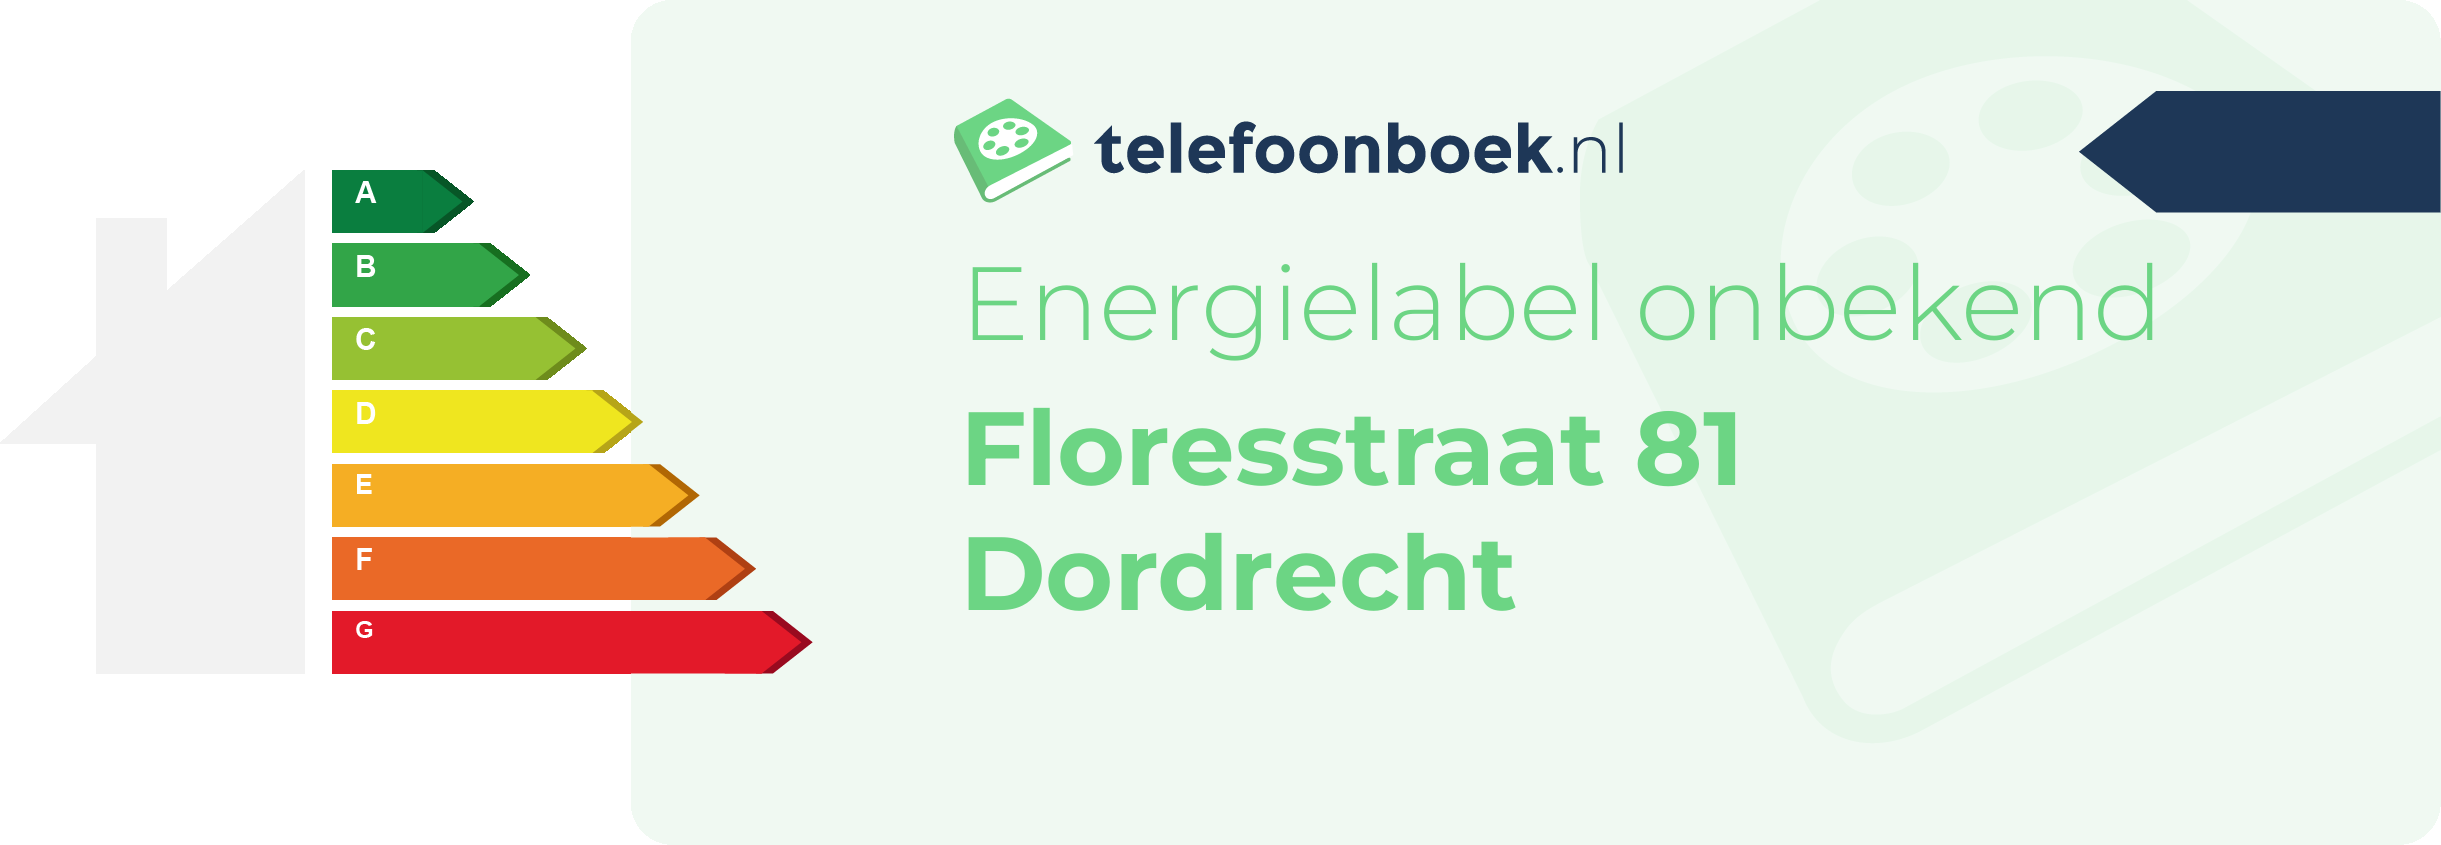 Energielabel Floresstraat 81 Dordrecht